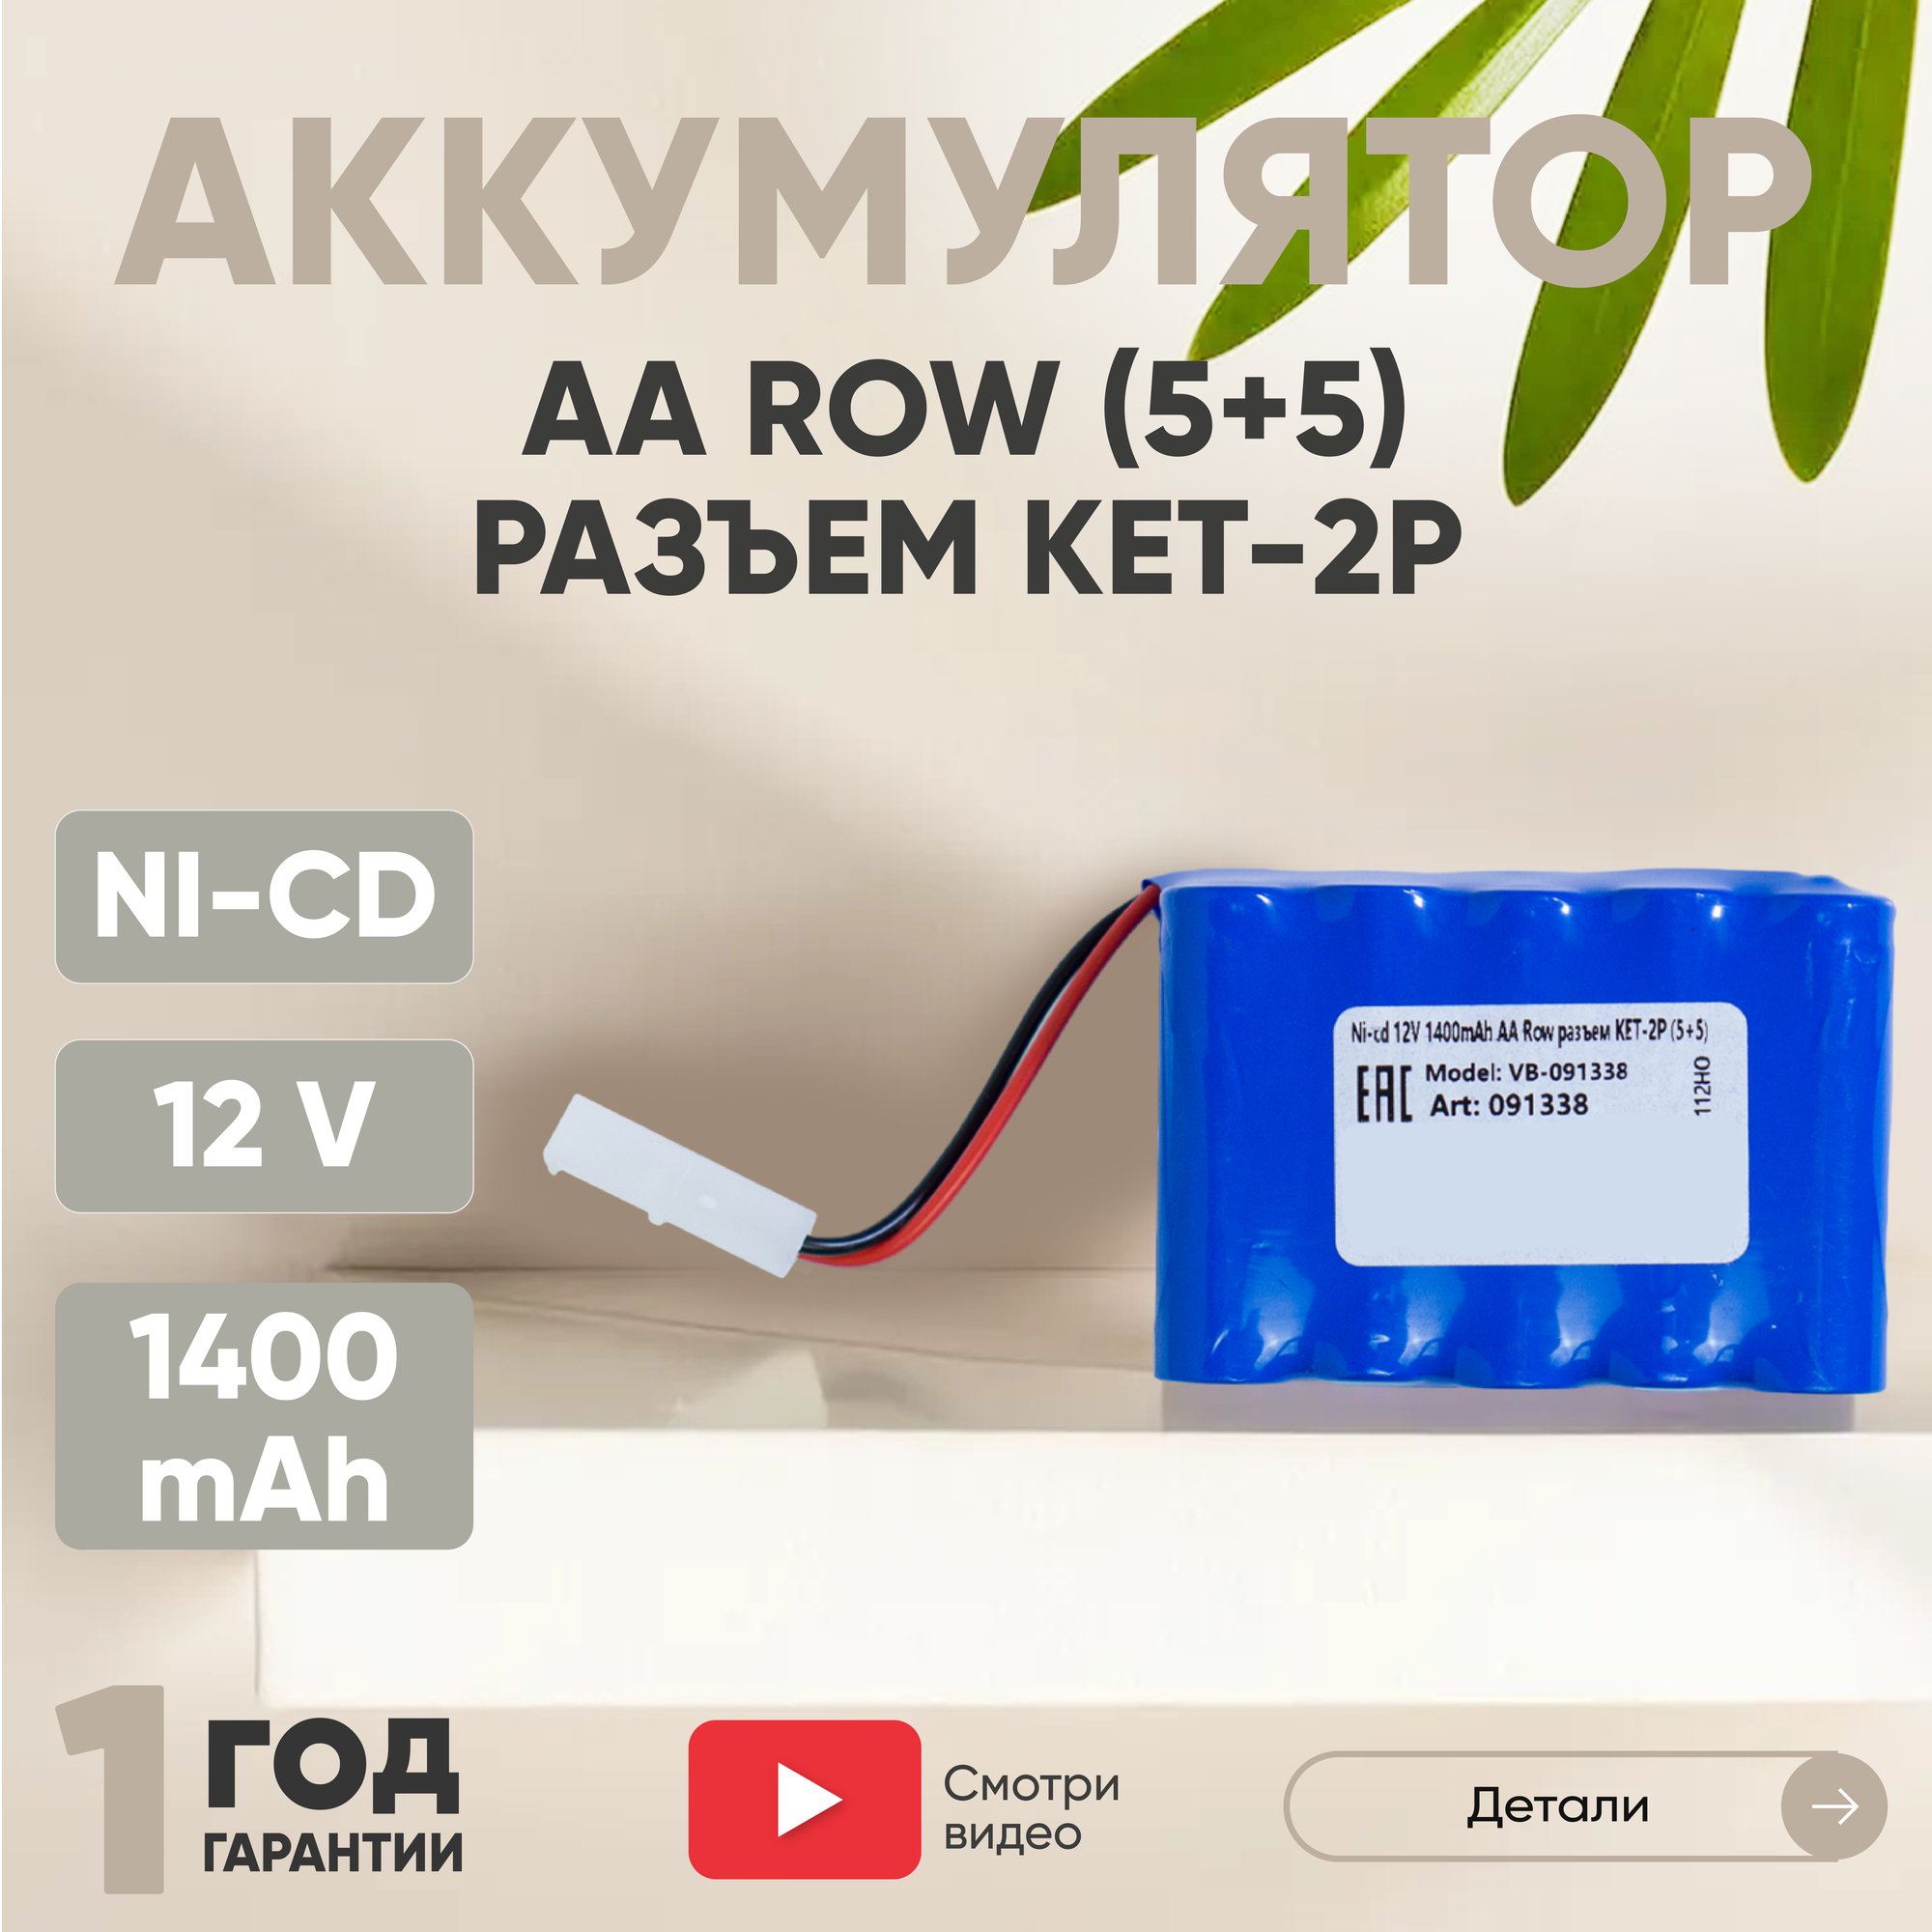 Аккумуляторная батарея (АКБ, аккумулятор) для радиоуправляемых игрушек / моделей, AA Row, разъем KET-2P (4+4), 12В, 1400мАч, Ni-Cd